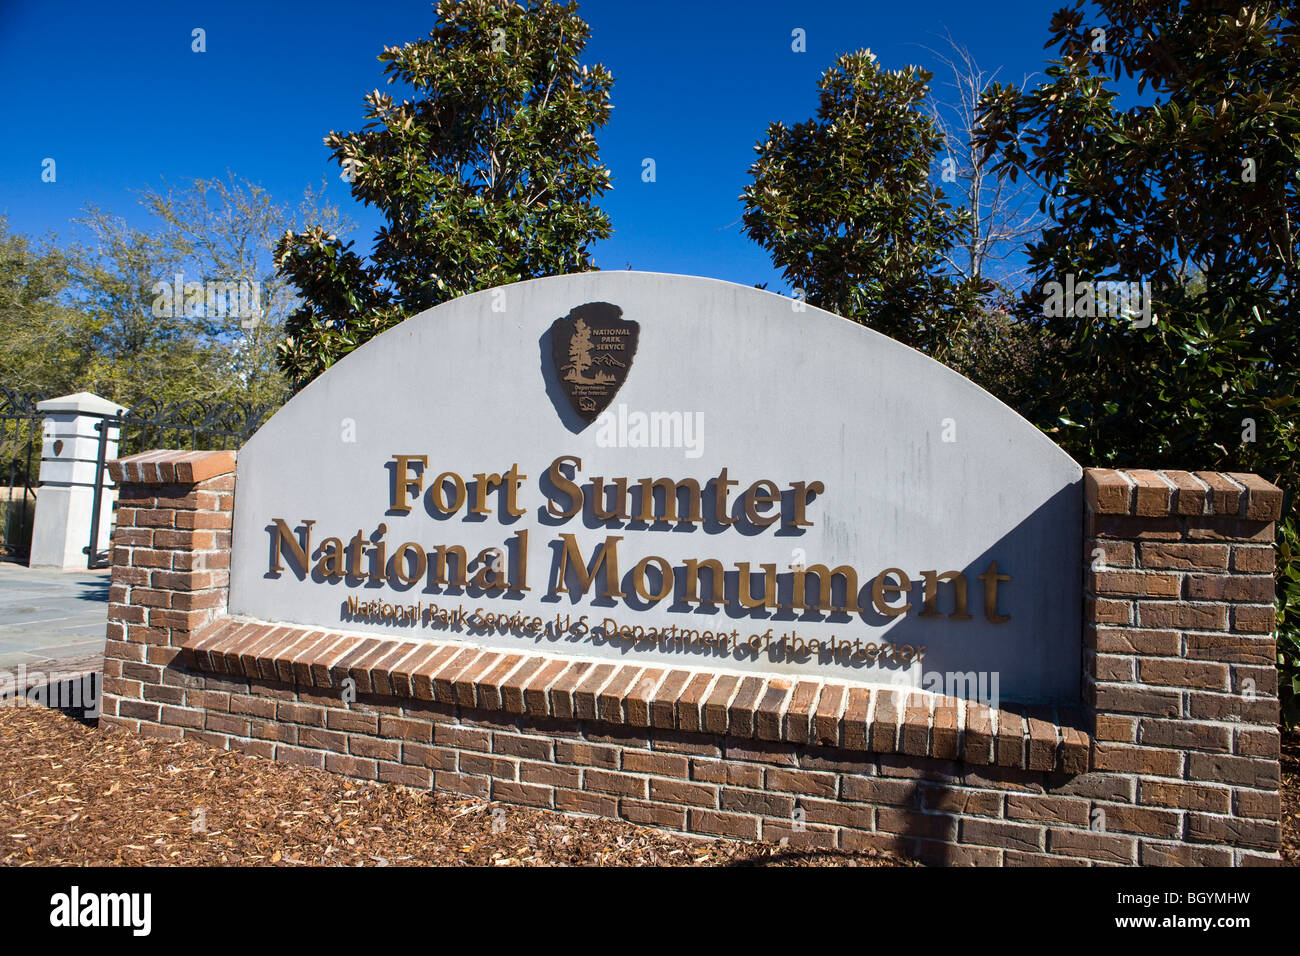 National Park Service cartel de bienvenida al monumento nacional Fort Sumter en Charleston, Carolina del Sur, Estados Unidos de América. Foto de stock